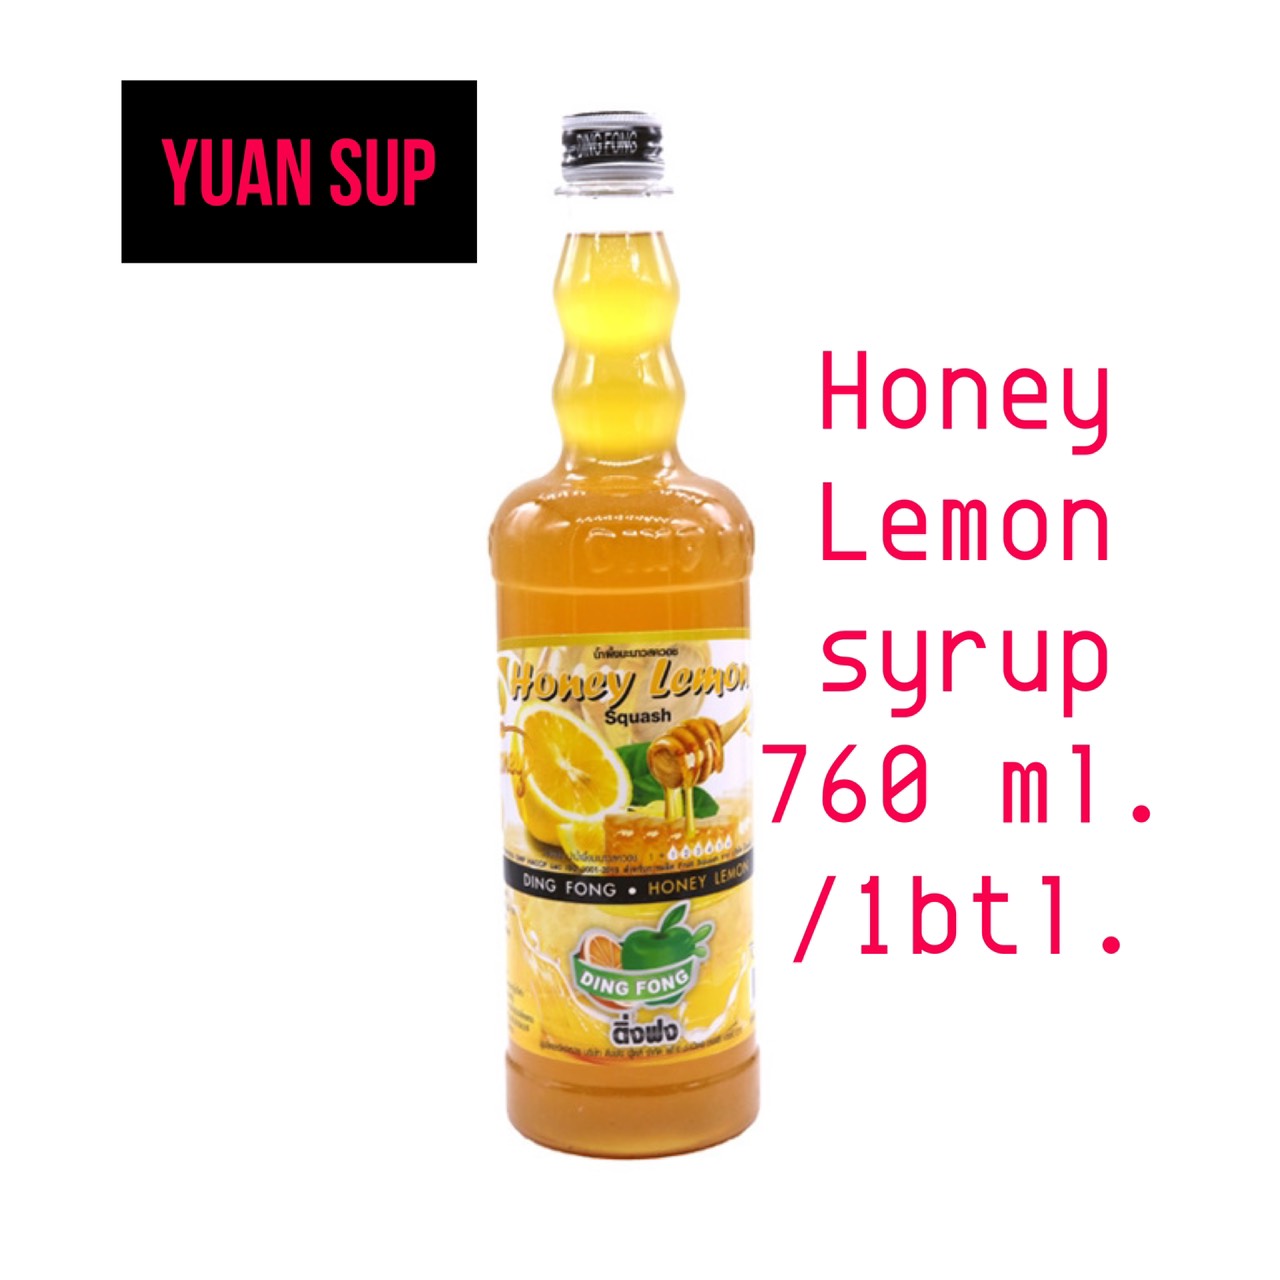 Honey lemon Syrup 760ml.ไซรัปน้ำผึ้งมะนาวตราติ่งฟง 760ml.สำหรับทำเครื่องดื่ม